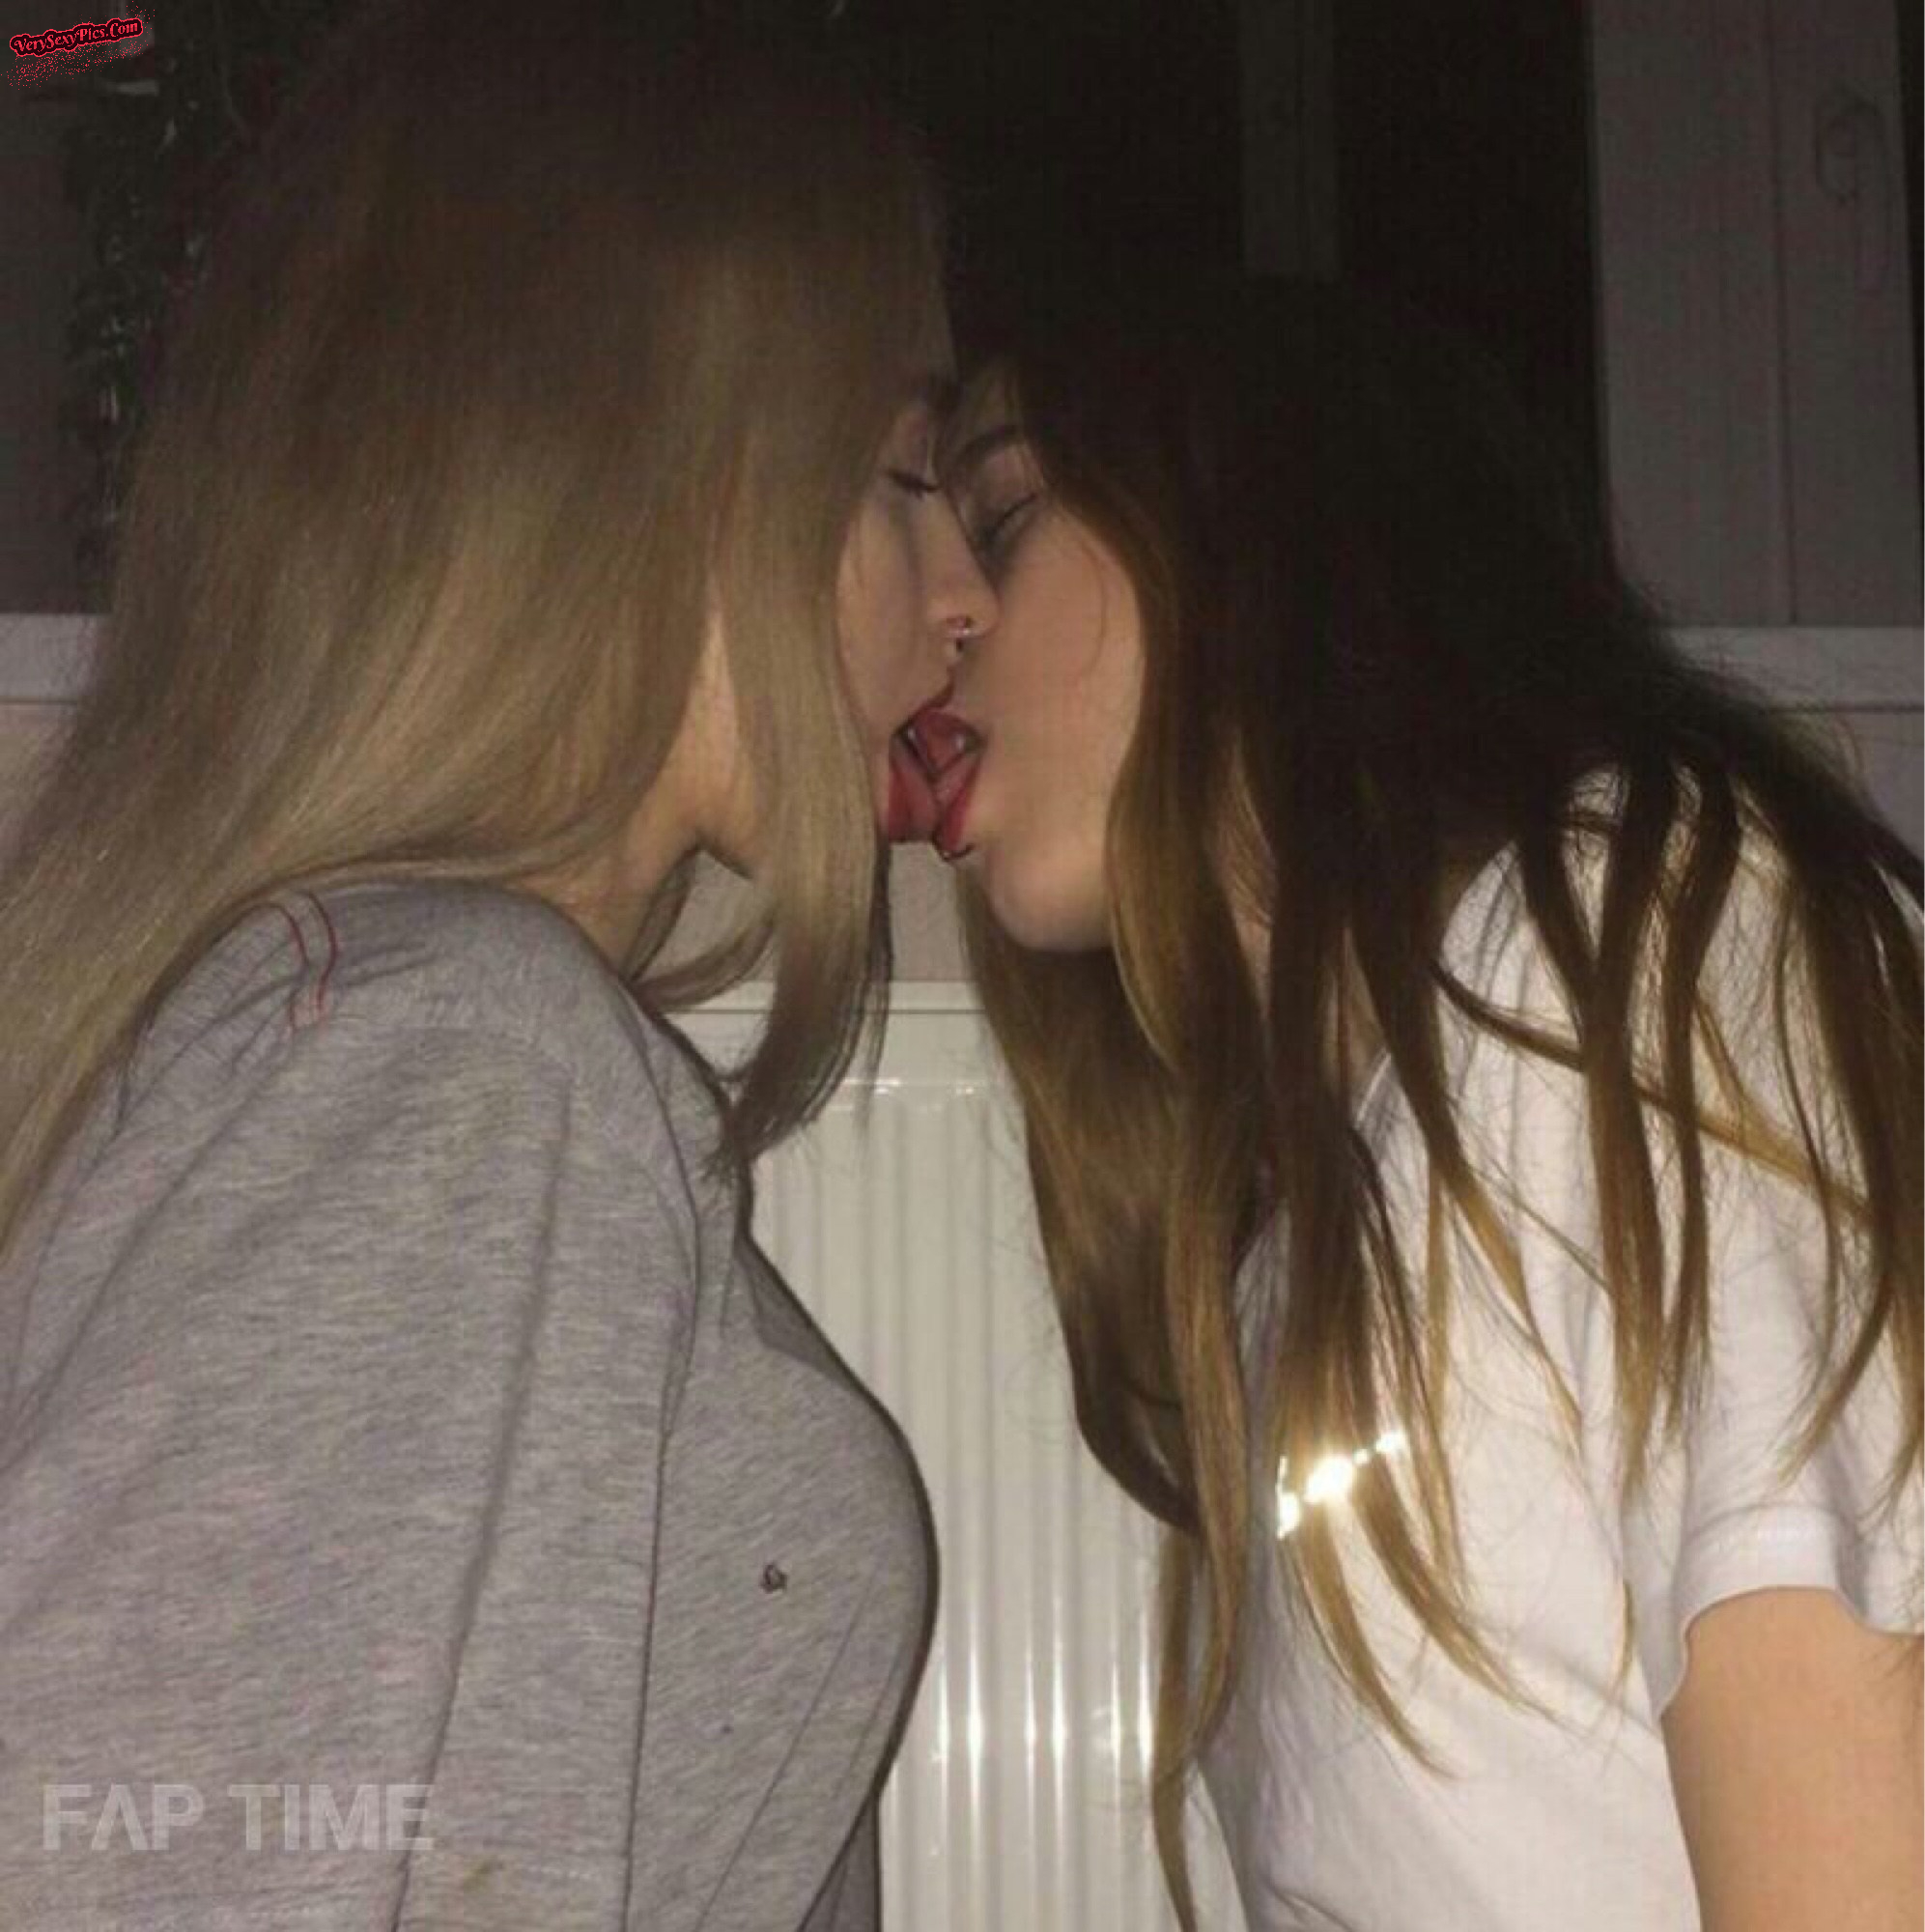 Amateur lesbian sluts in action